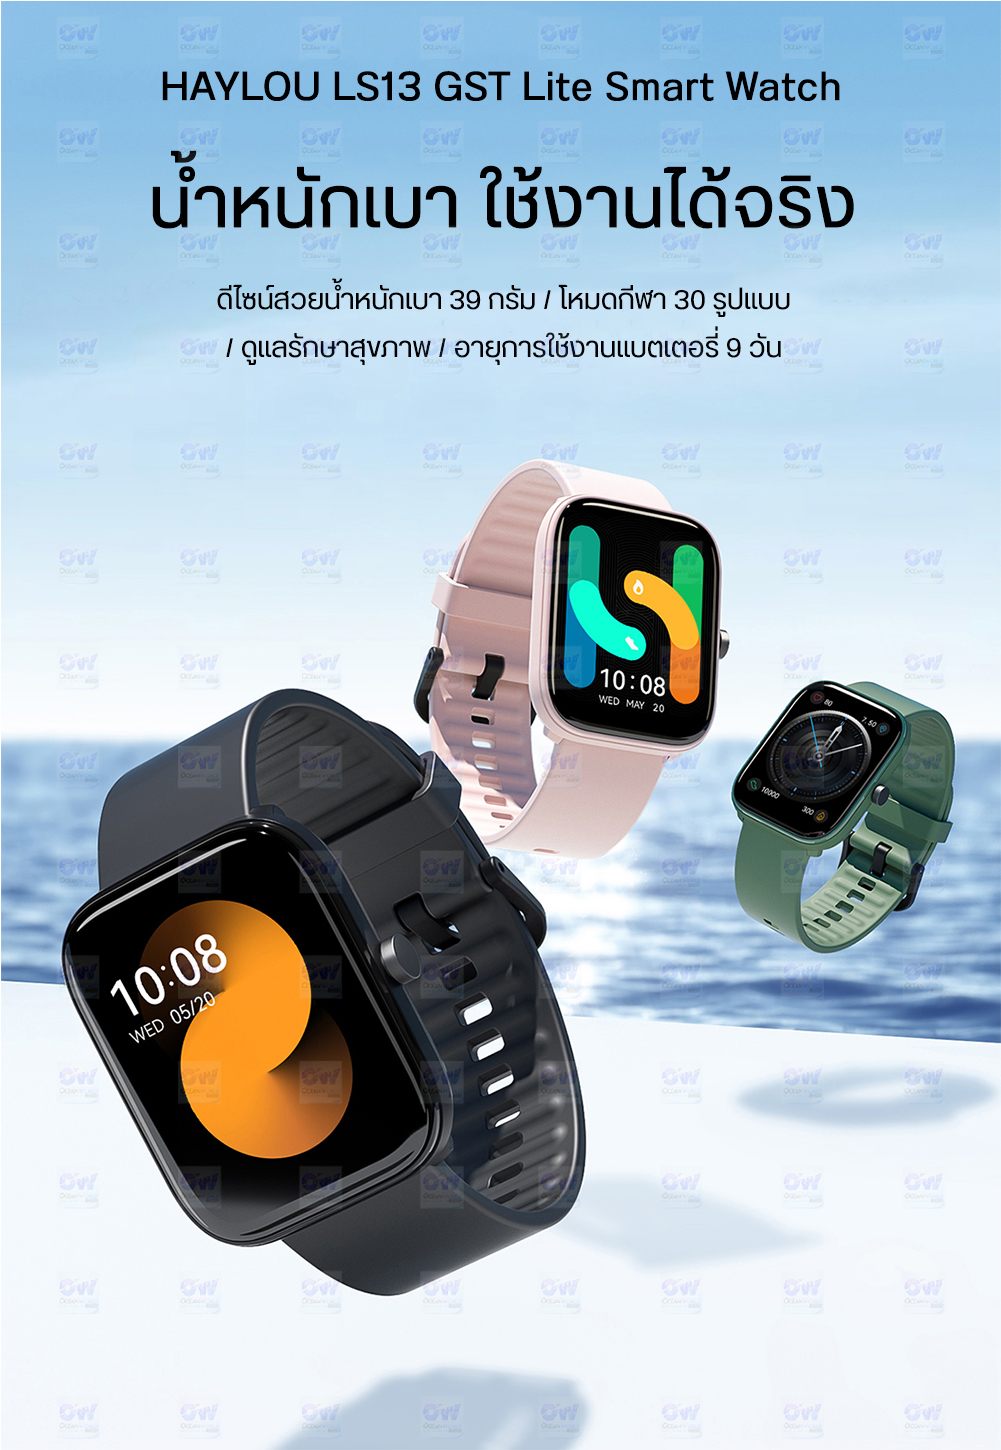 ภาพประกอบคำอธิบาย Haylou Solar LS05 / LS13 GST Lite Smart Watch Fitness Tracker Waterproof 12 Sport Modes,Call Reminder, Blth 5.0 นาฬิกาสมาทวอช สมาร์ทวอช์ท อัจฉริยะ กันน้ำ IP68 พร้อม 12 โหมดออกกำลังกาย